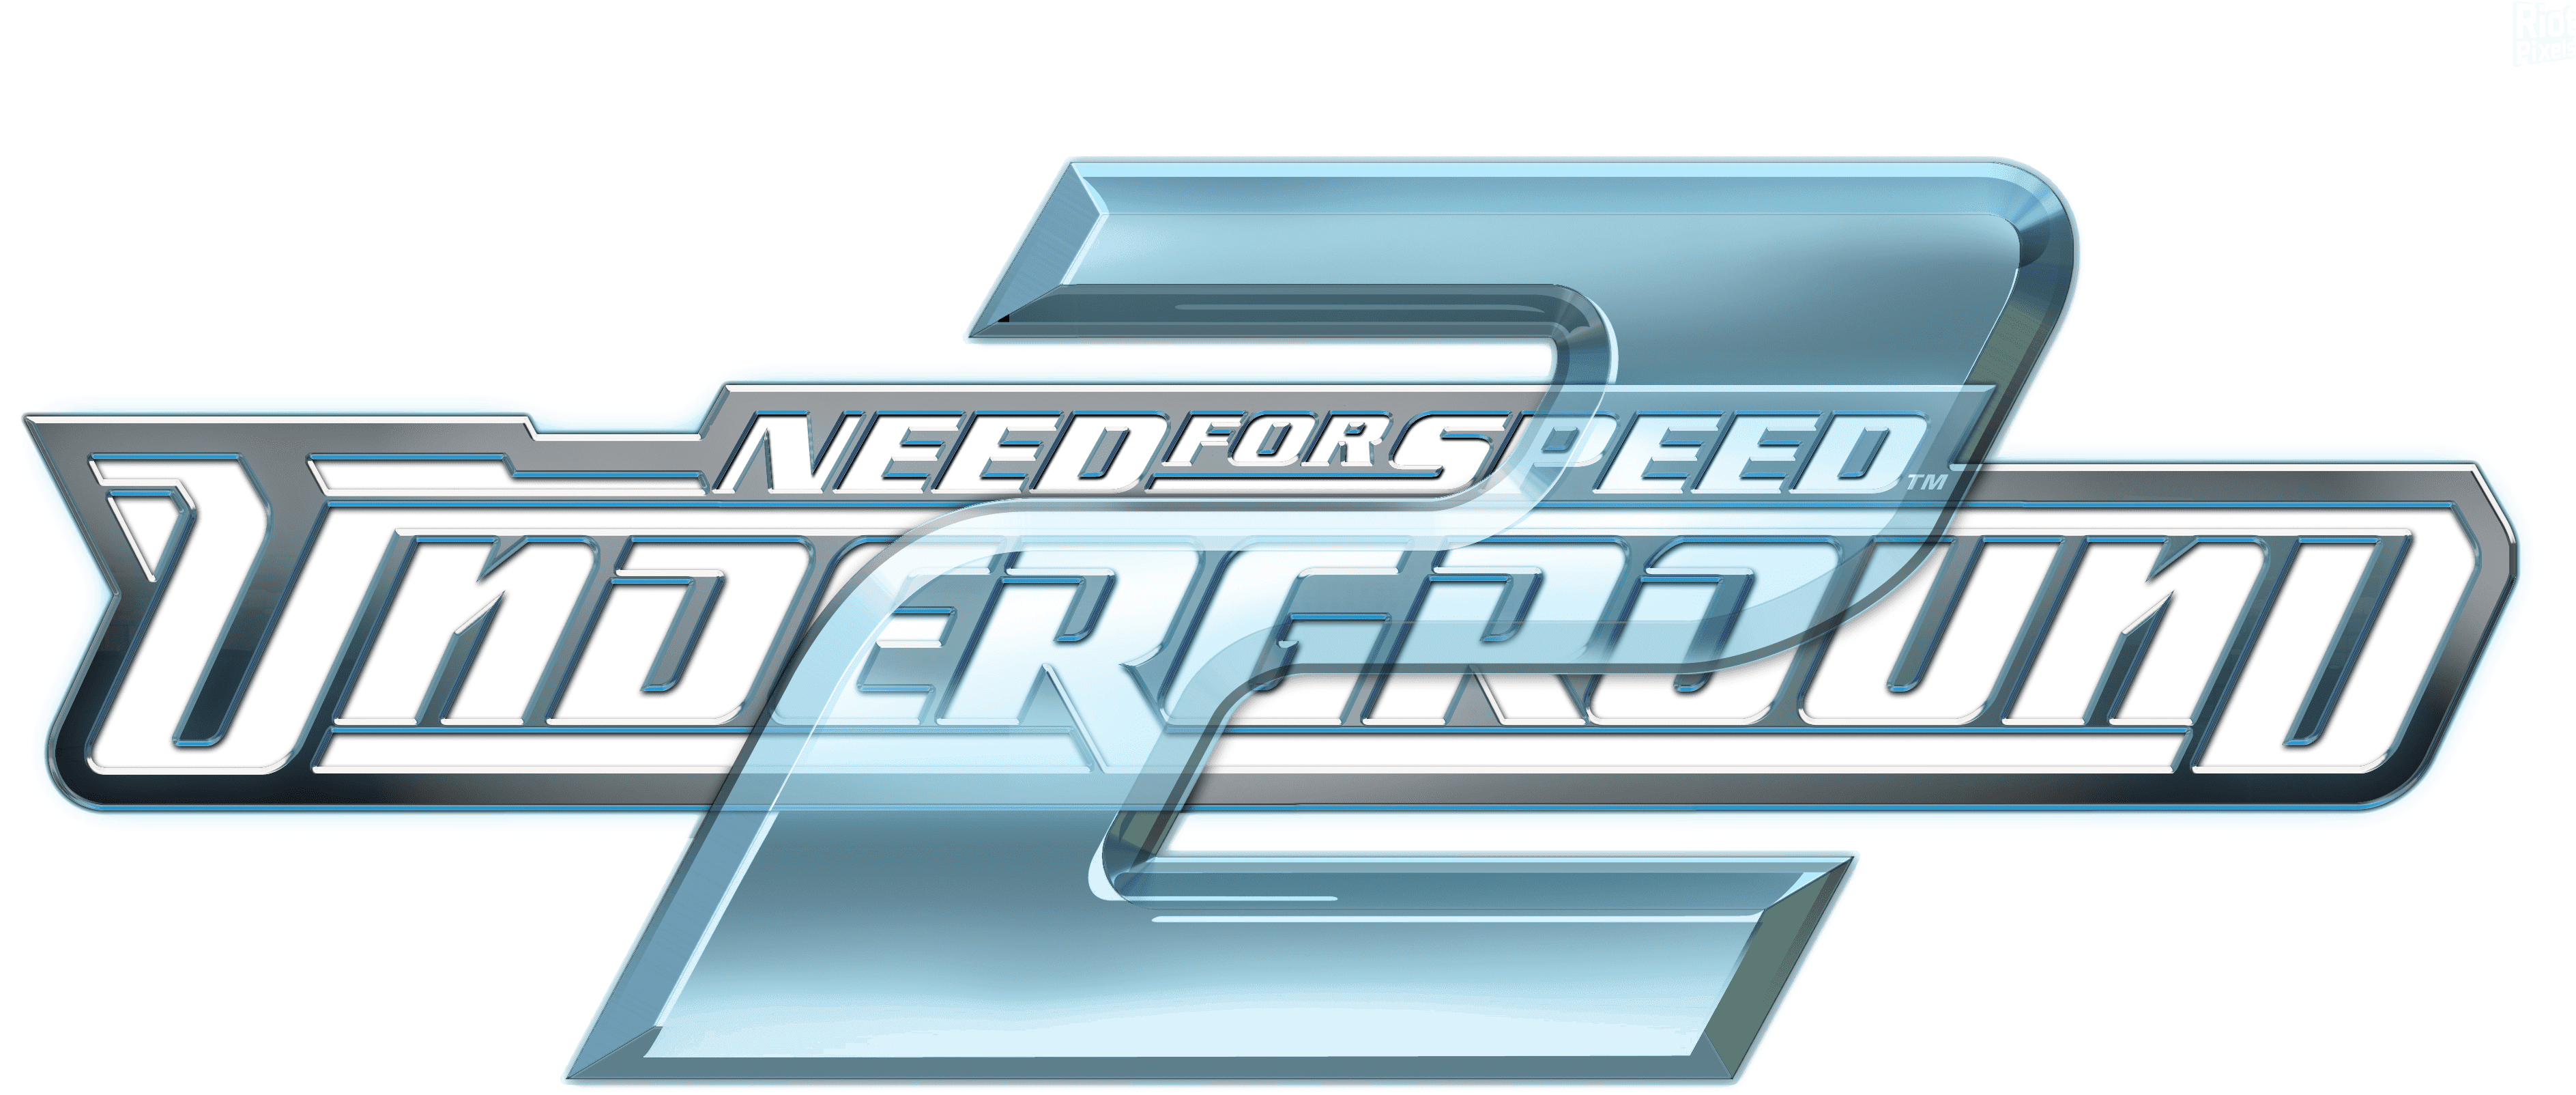 Need For Speed Underground - Nfs Underground 2 Logo (3900x1800), Png Download